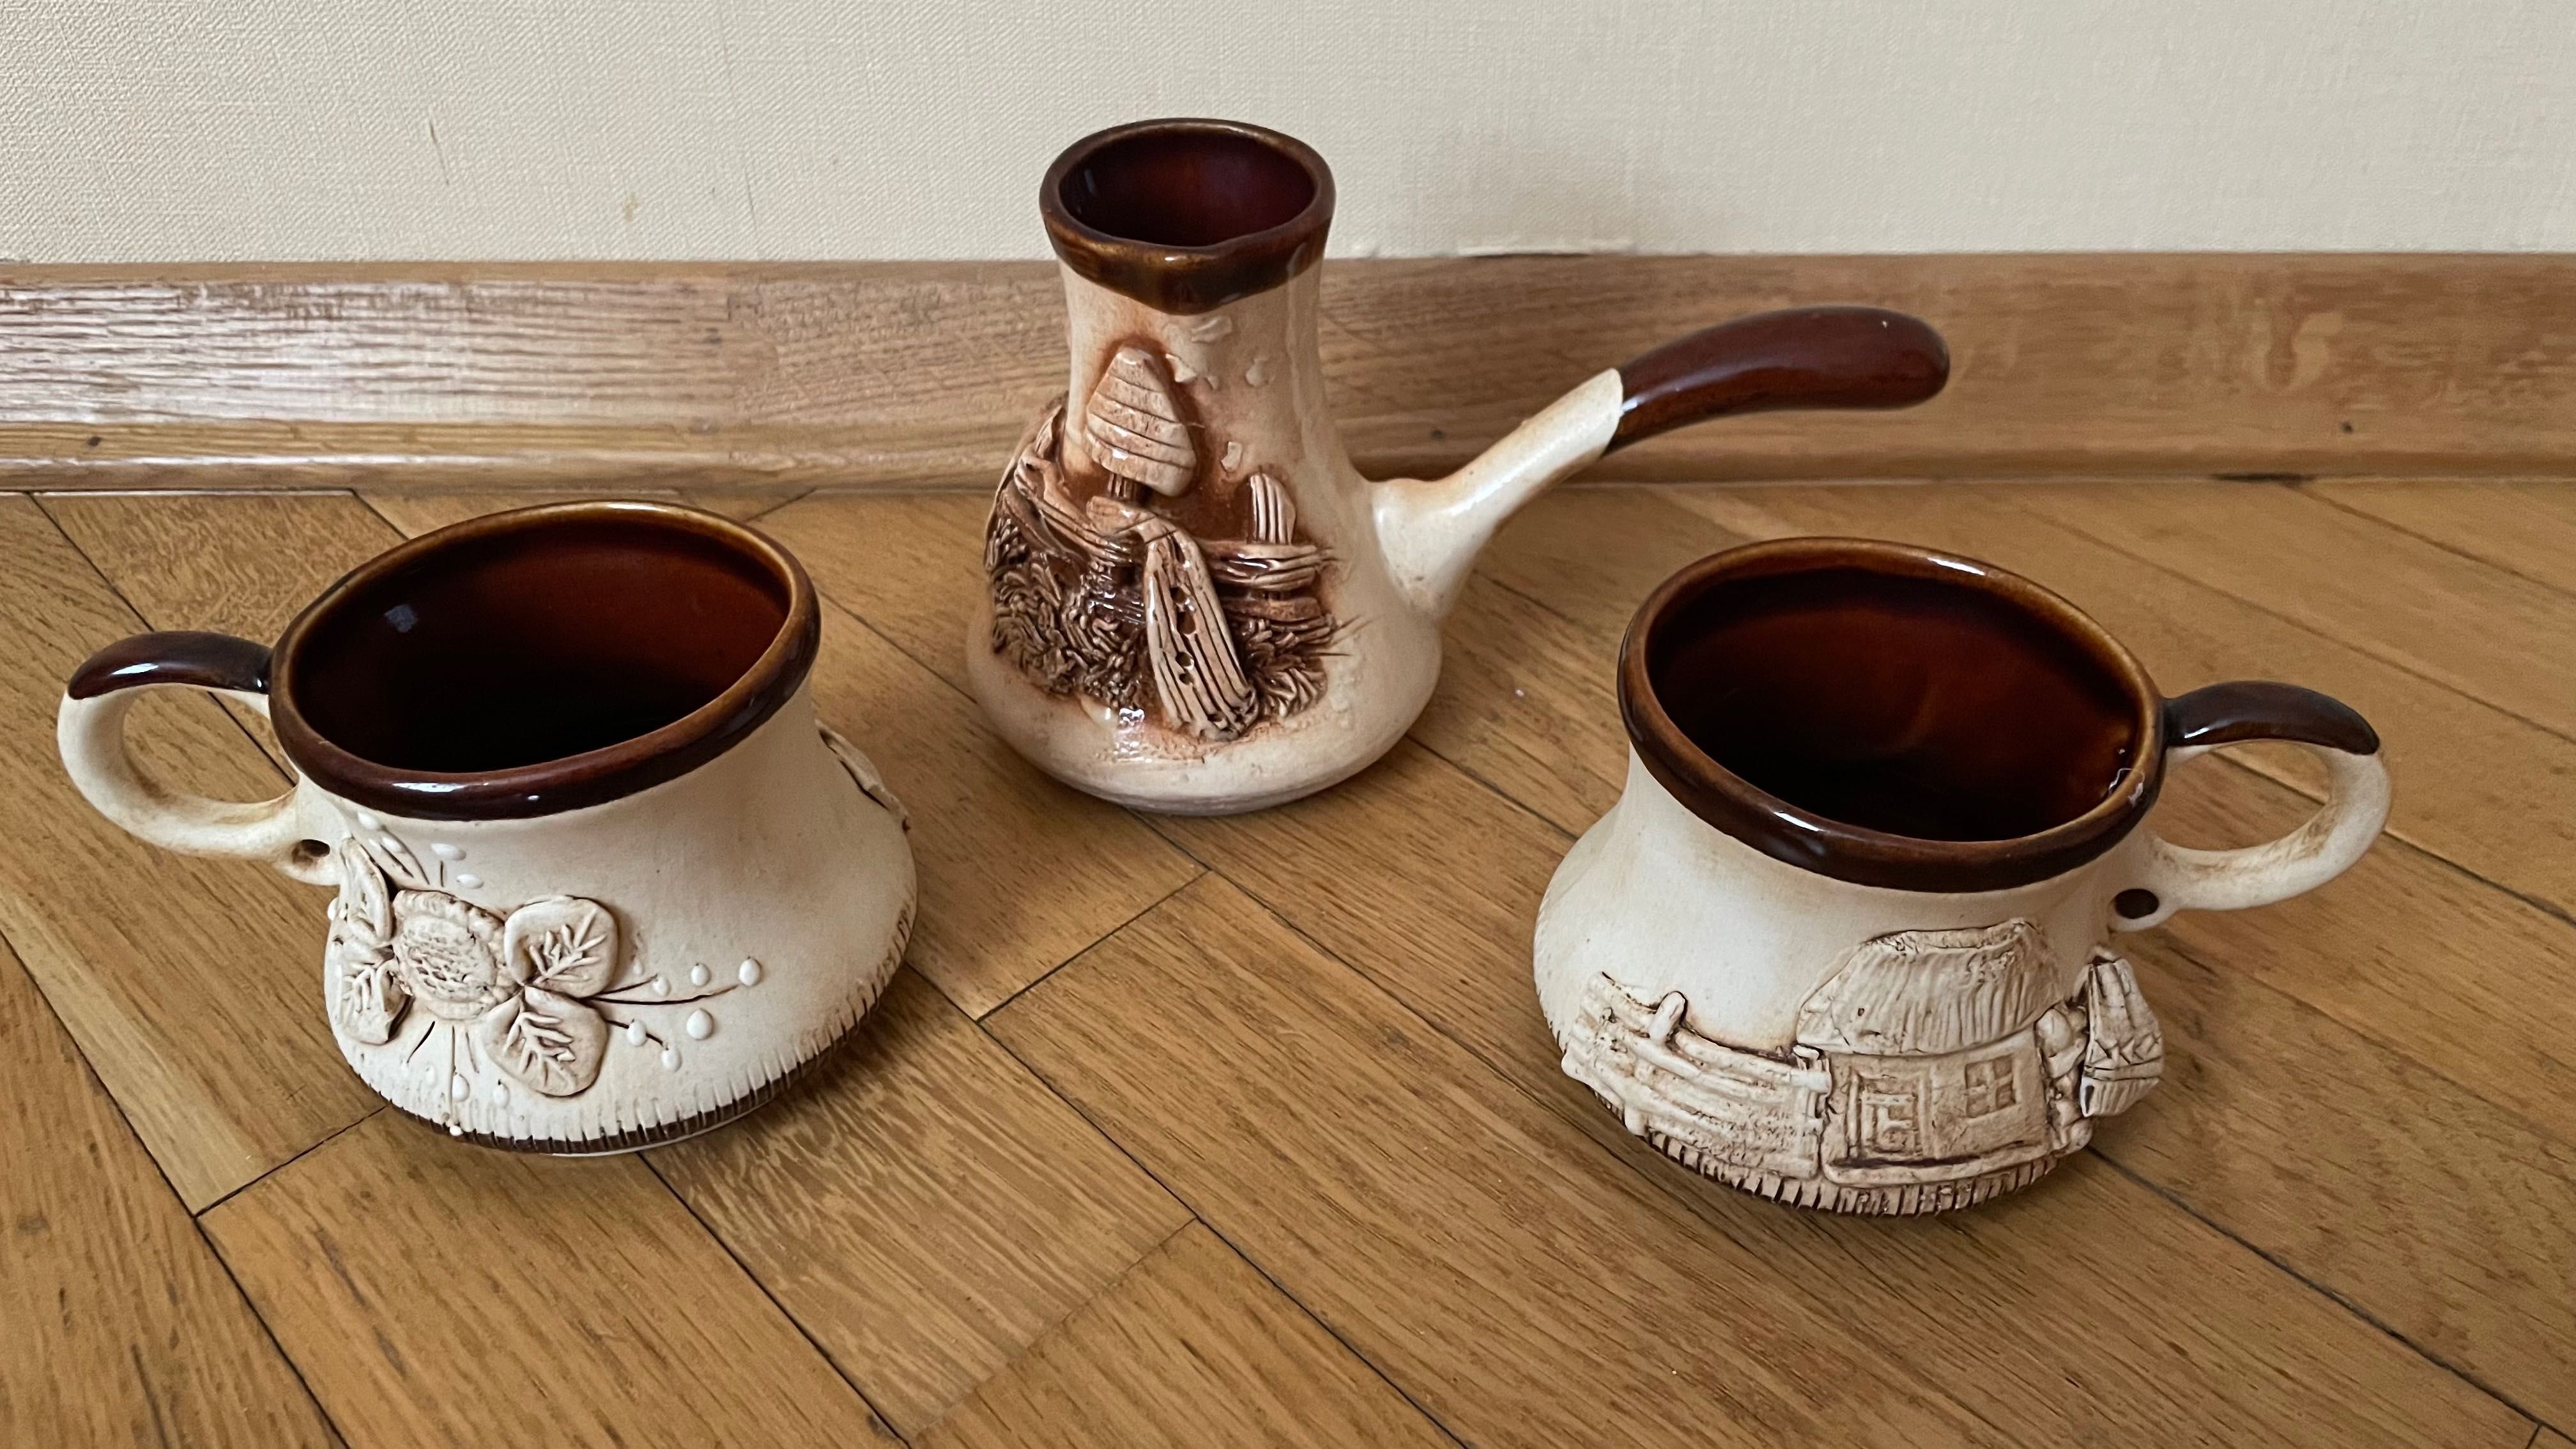 Турка, Джезва керамика, чашки для кофе керамика